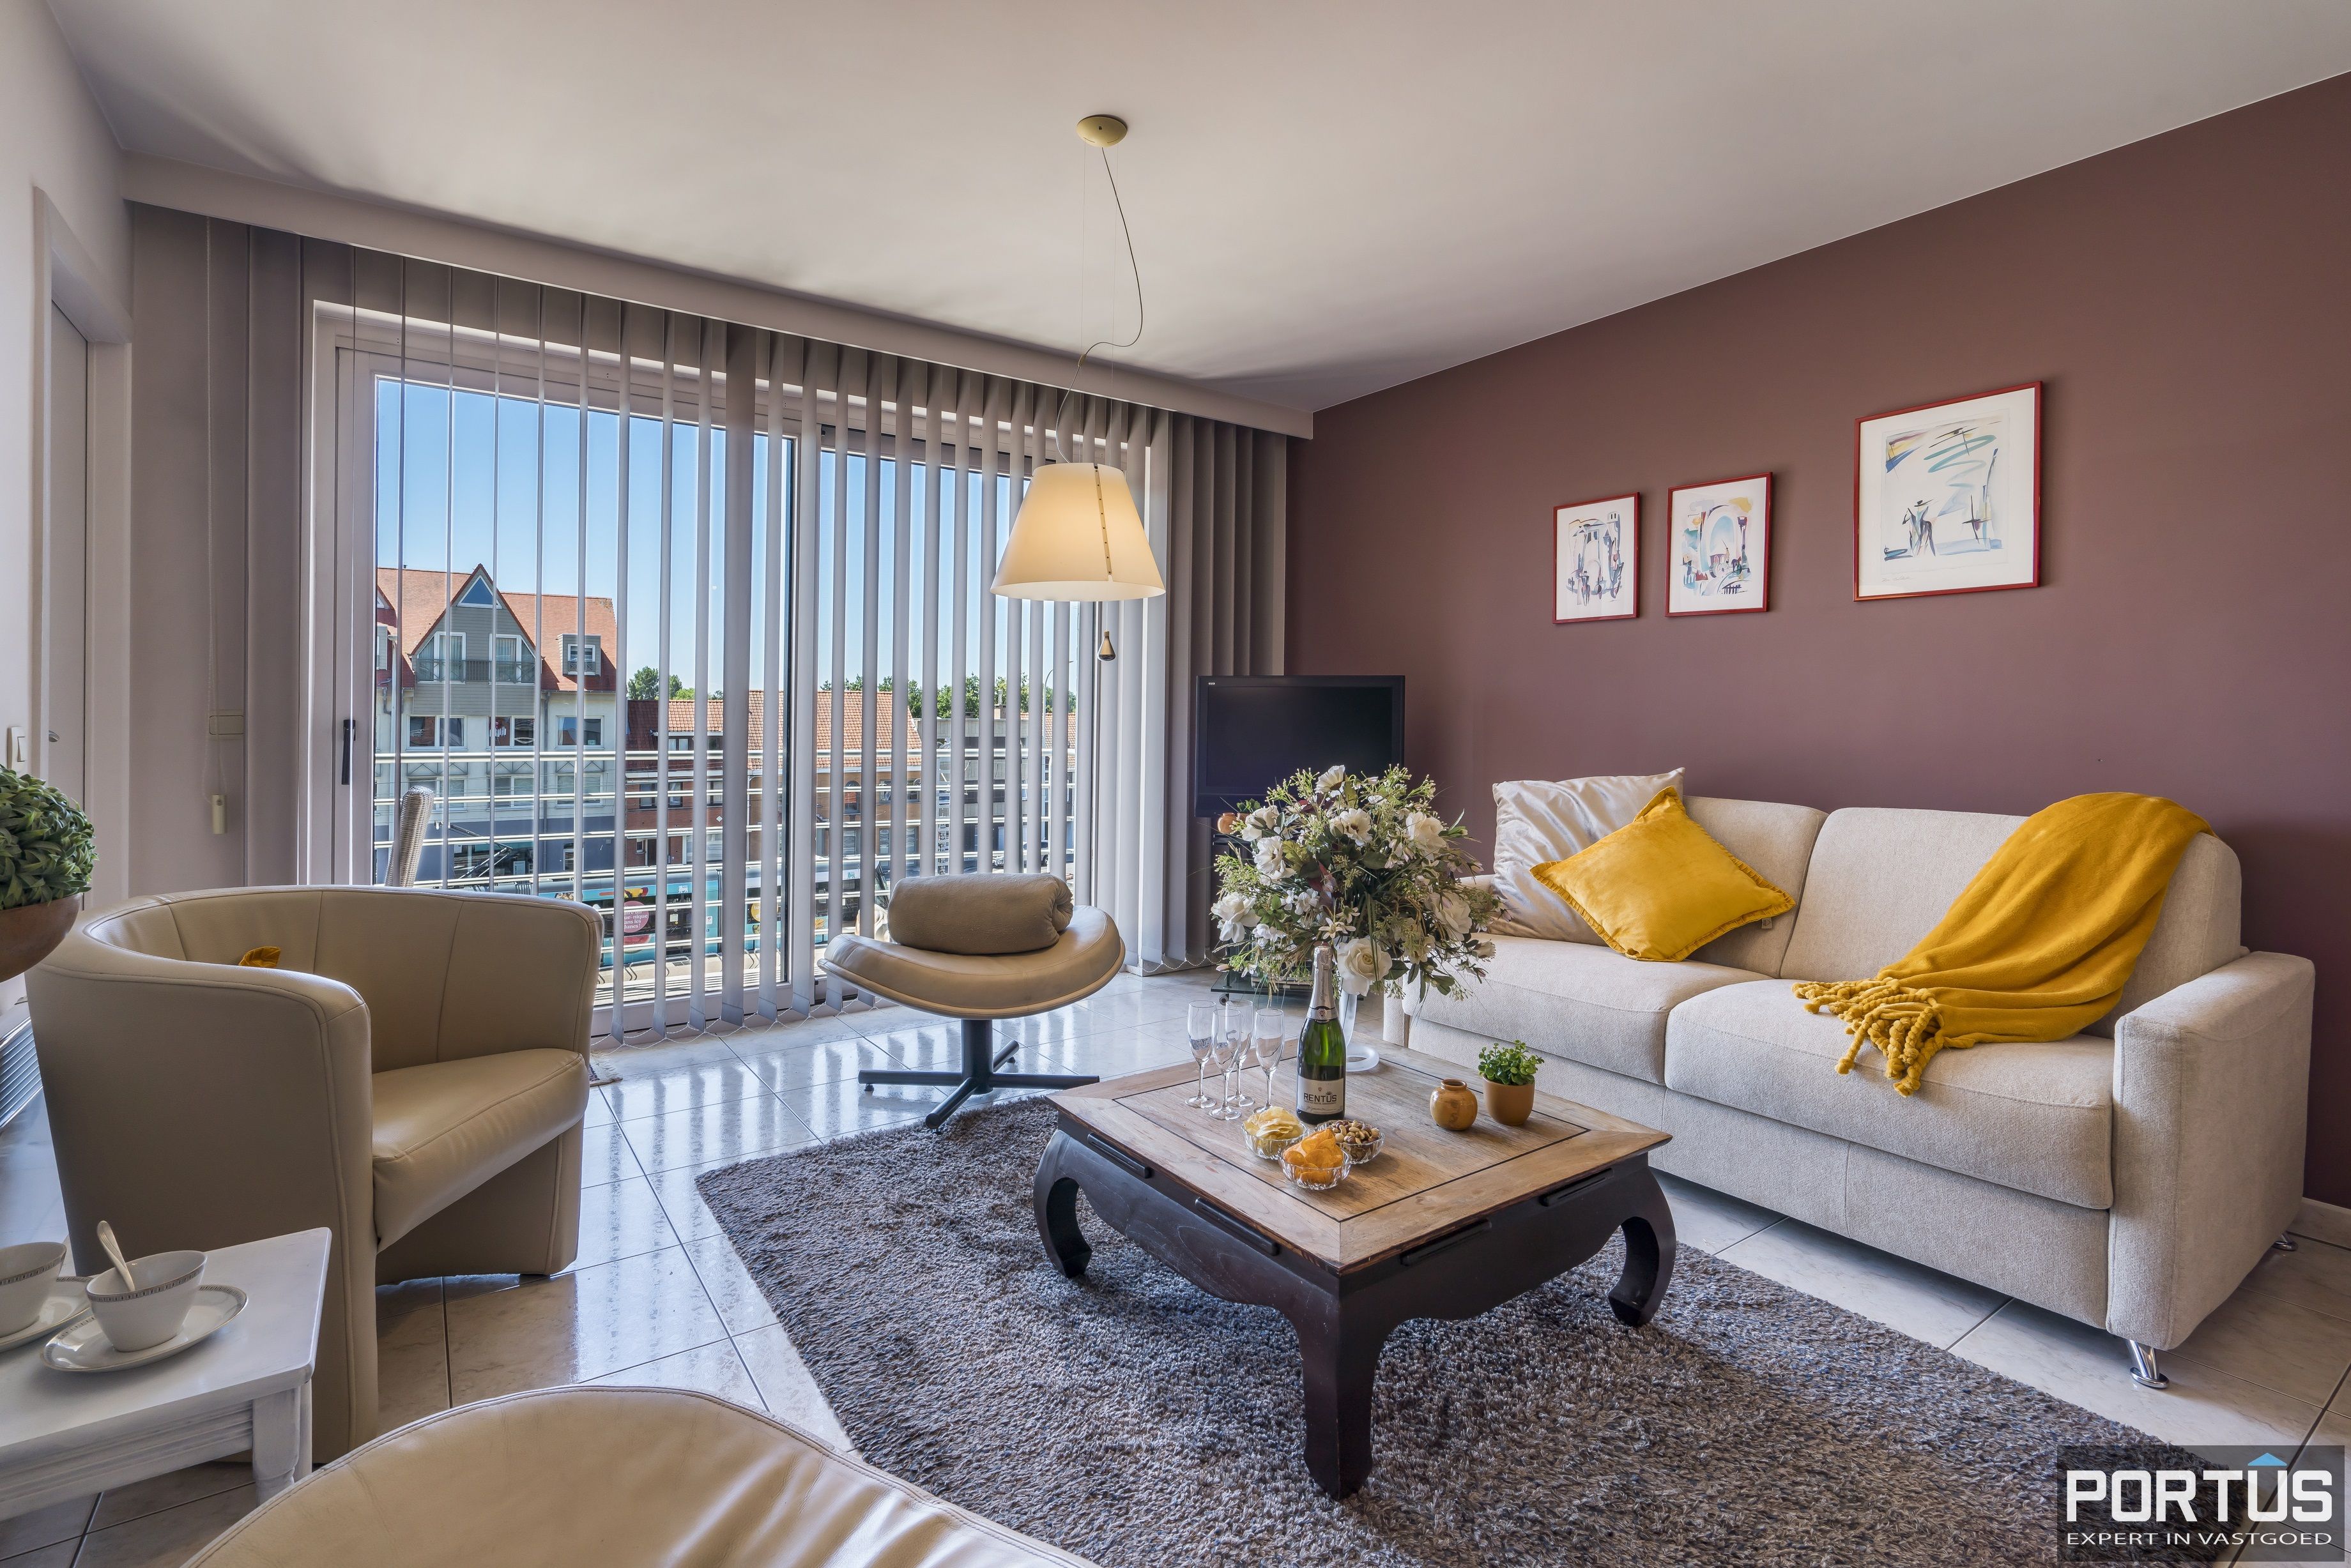 Appartement met 1 slaapkamer te koop te Nieuwpoort